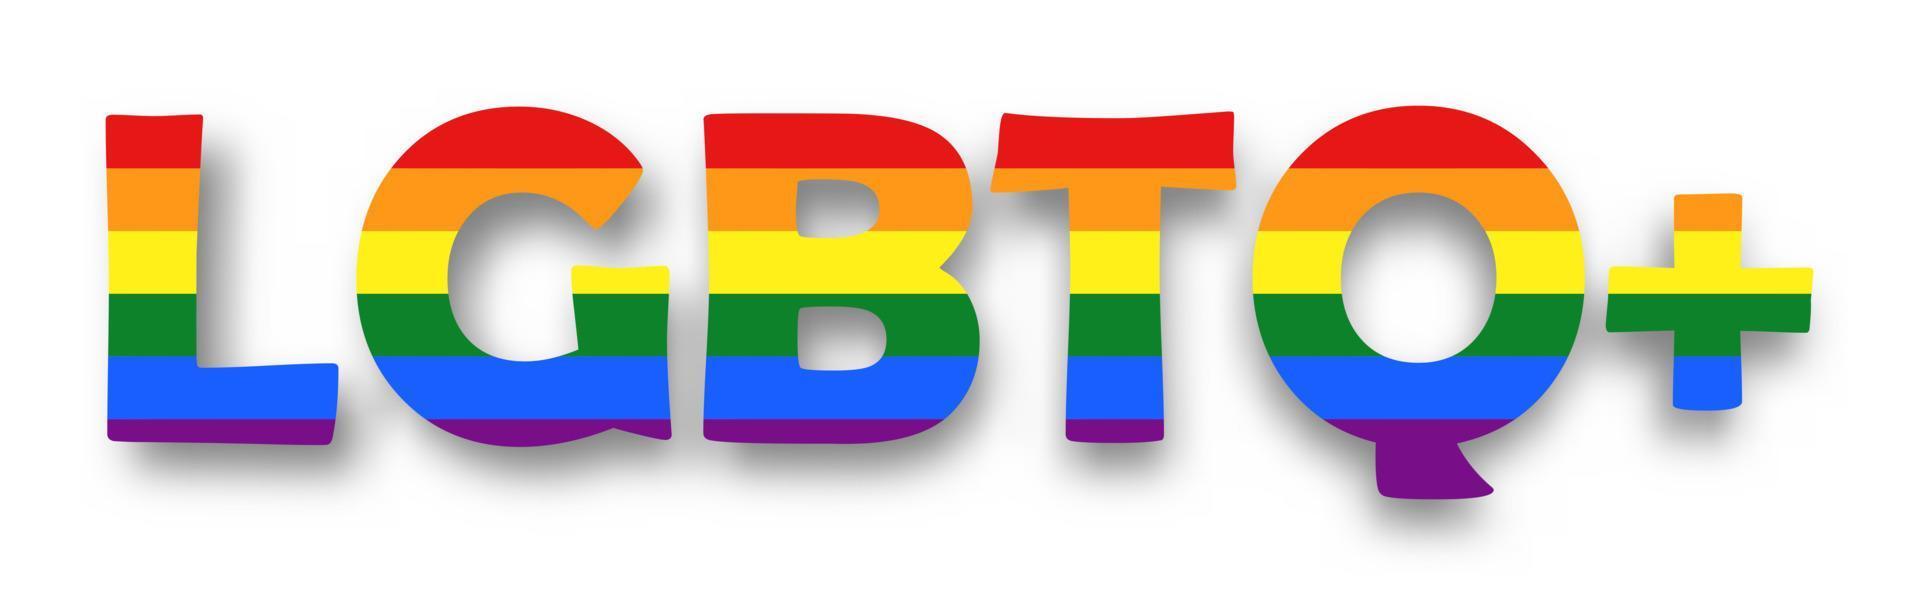 LGBT-alfabet met het ontwerp van de regenboogvlag op een witte geïsoleerde achtergrond. seksuele geaardheid concept. vectorillustratie. vector